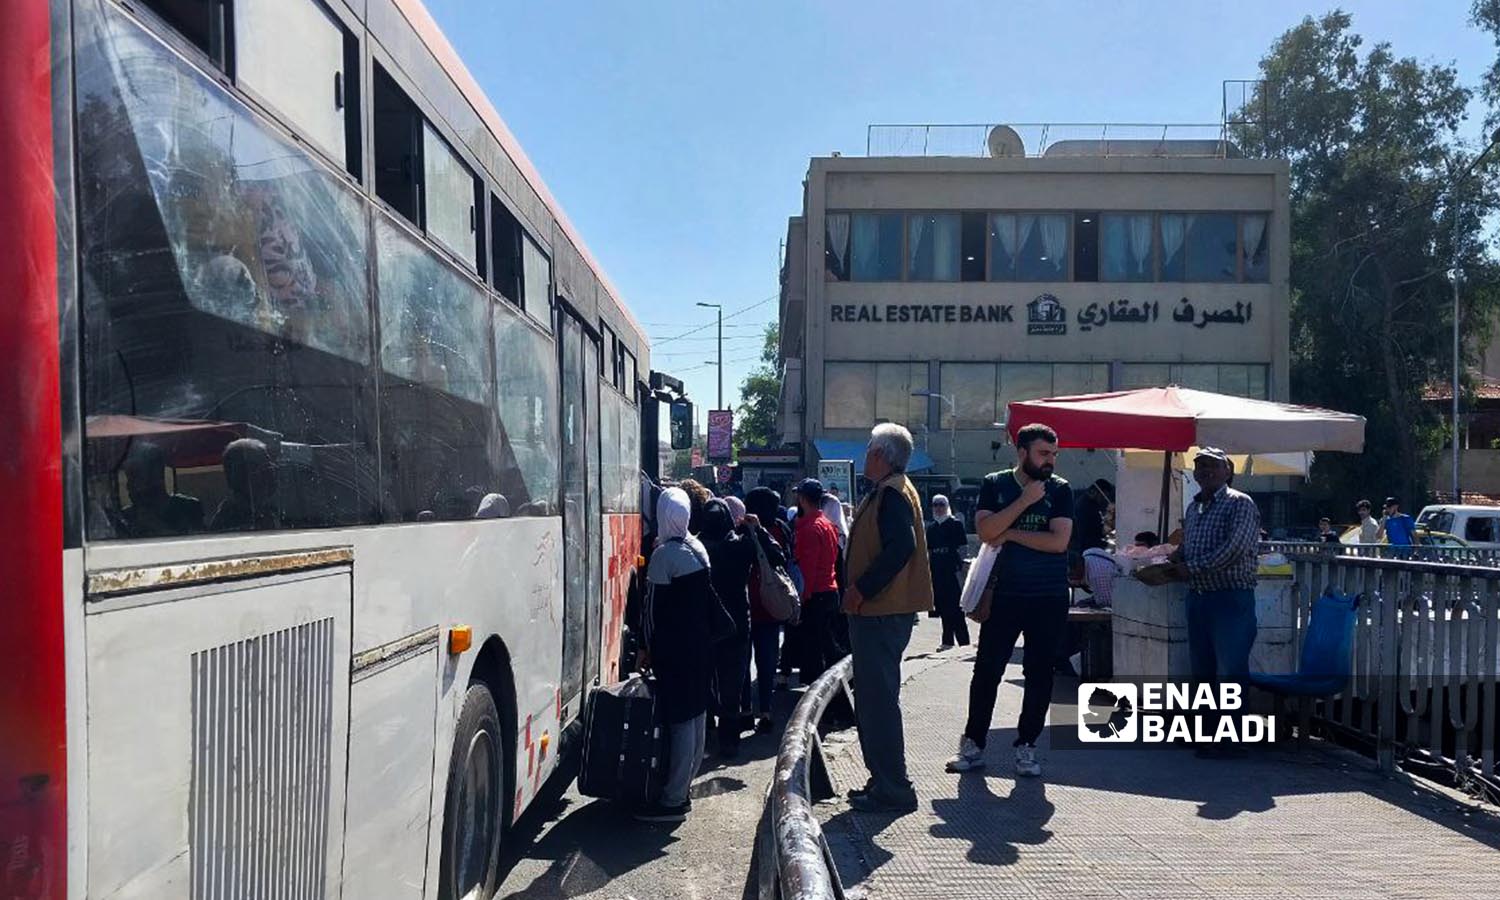 ركاب يستقلون حافلة للنقل العام بالقرب من المصرف العقاري في منطقة البرامكة بدمشق - 26 من تشرين الأول 2023 (عنب بلدي / سارة الأحمد)